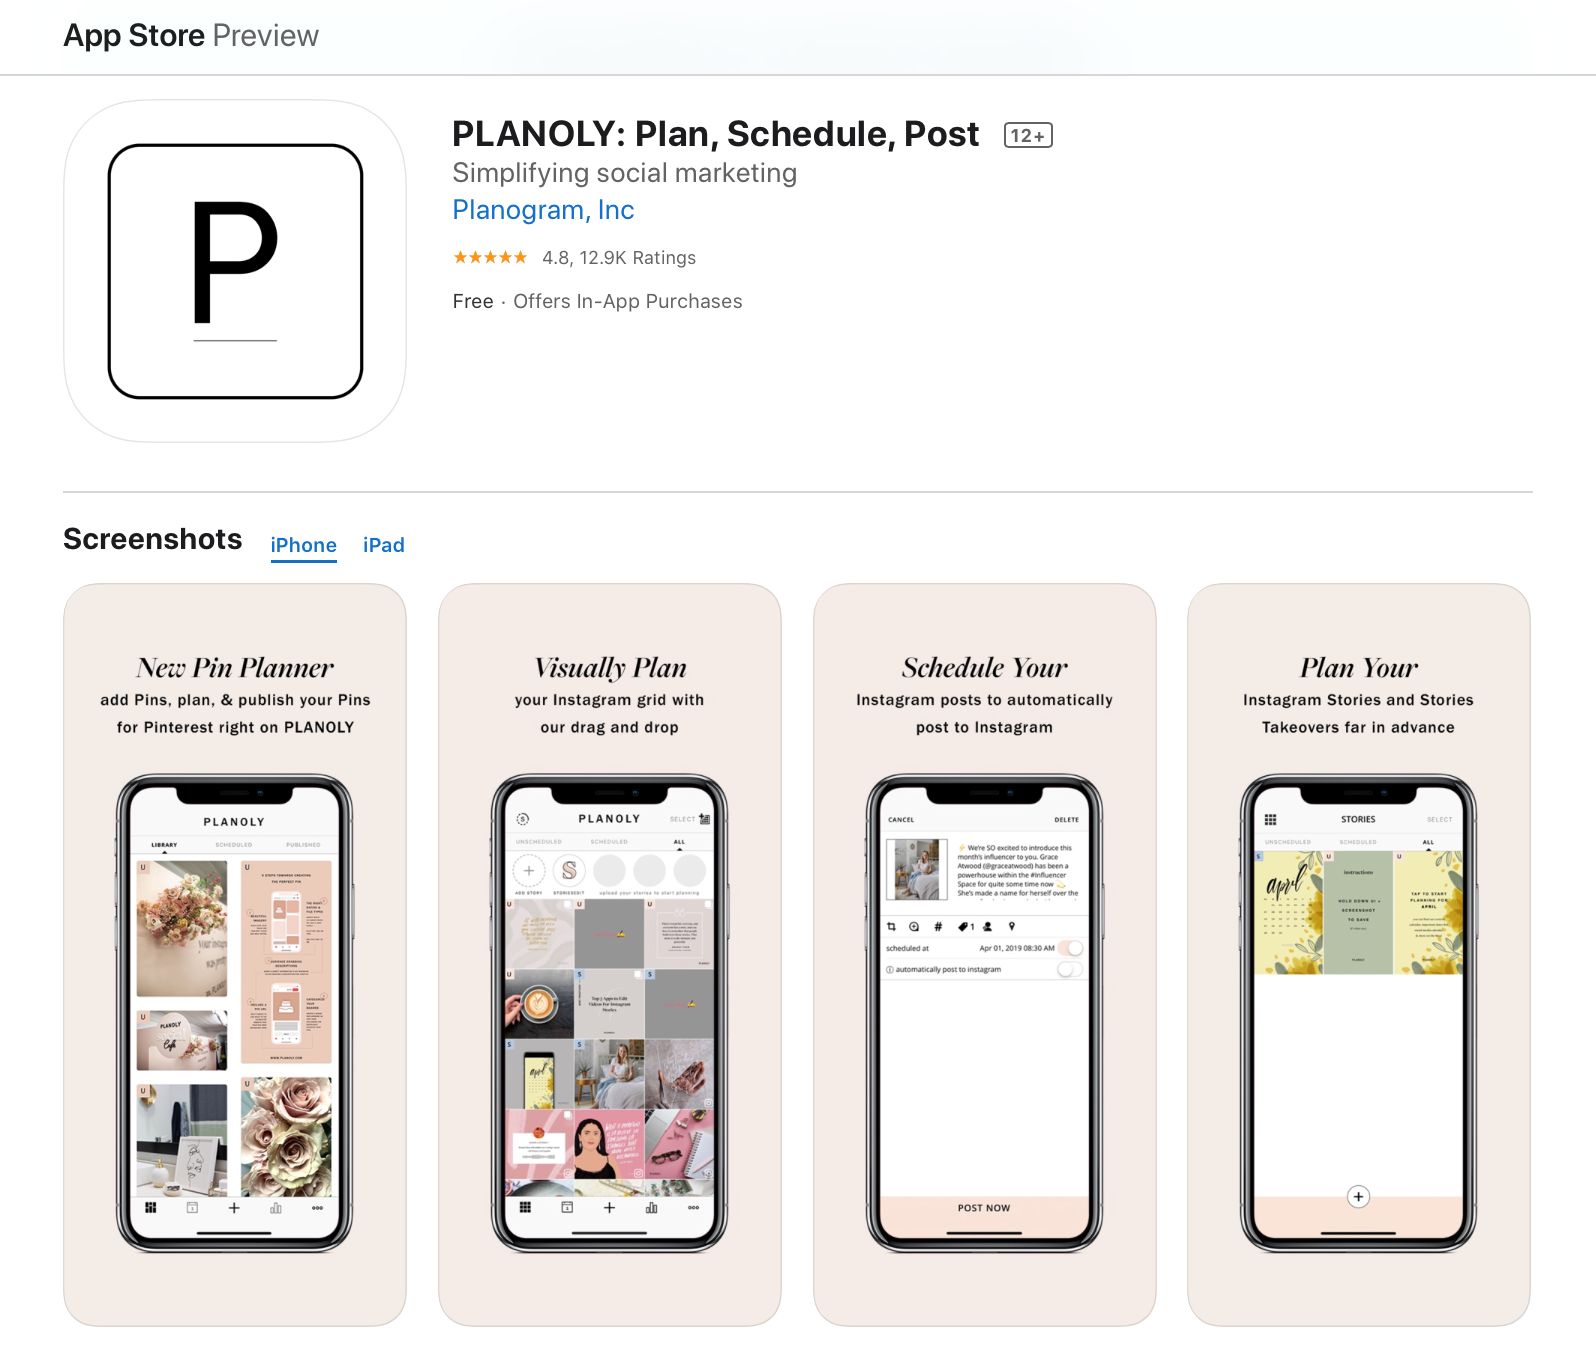 App Store'da yer alan Planoly uygulaması